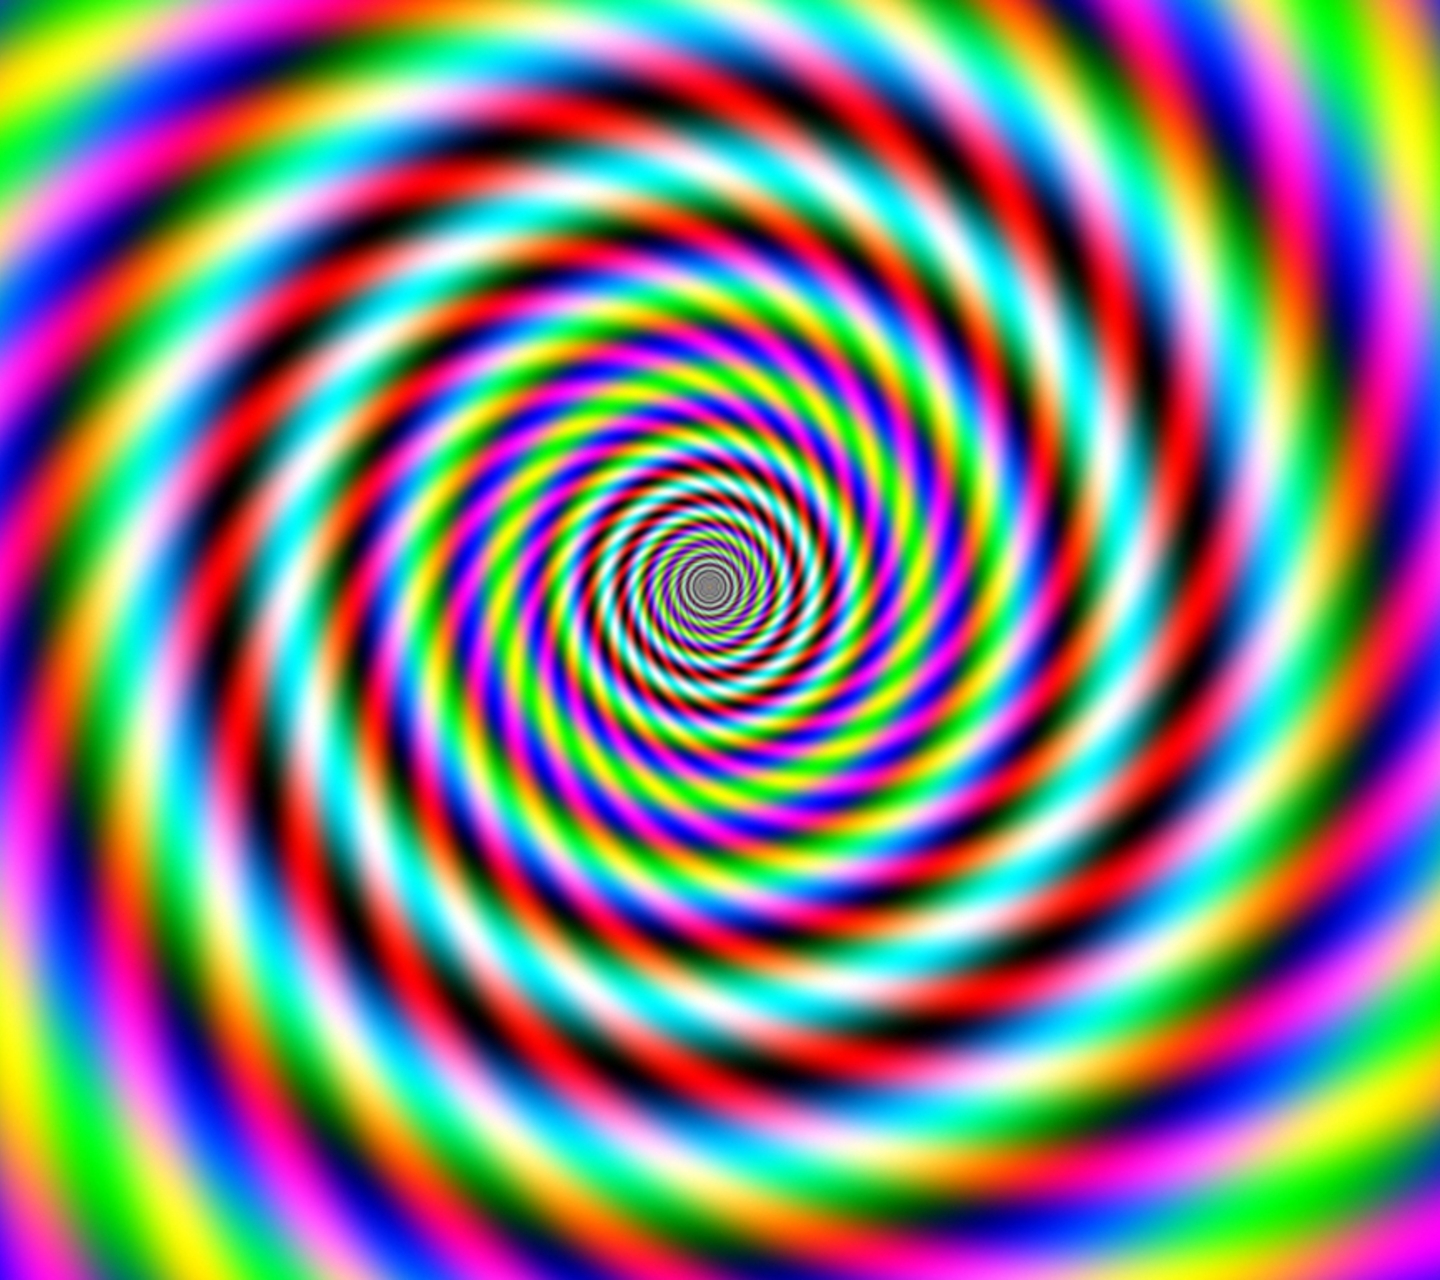 Оптическая иллюзия спираль Фрейзера